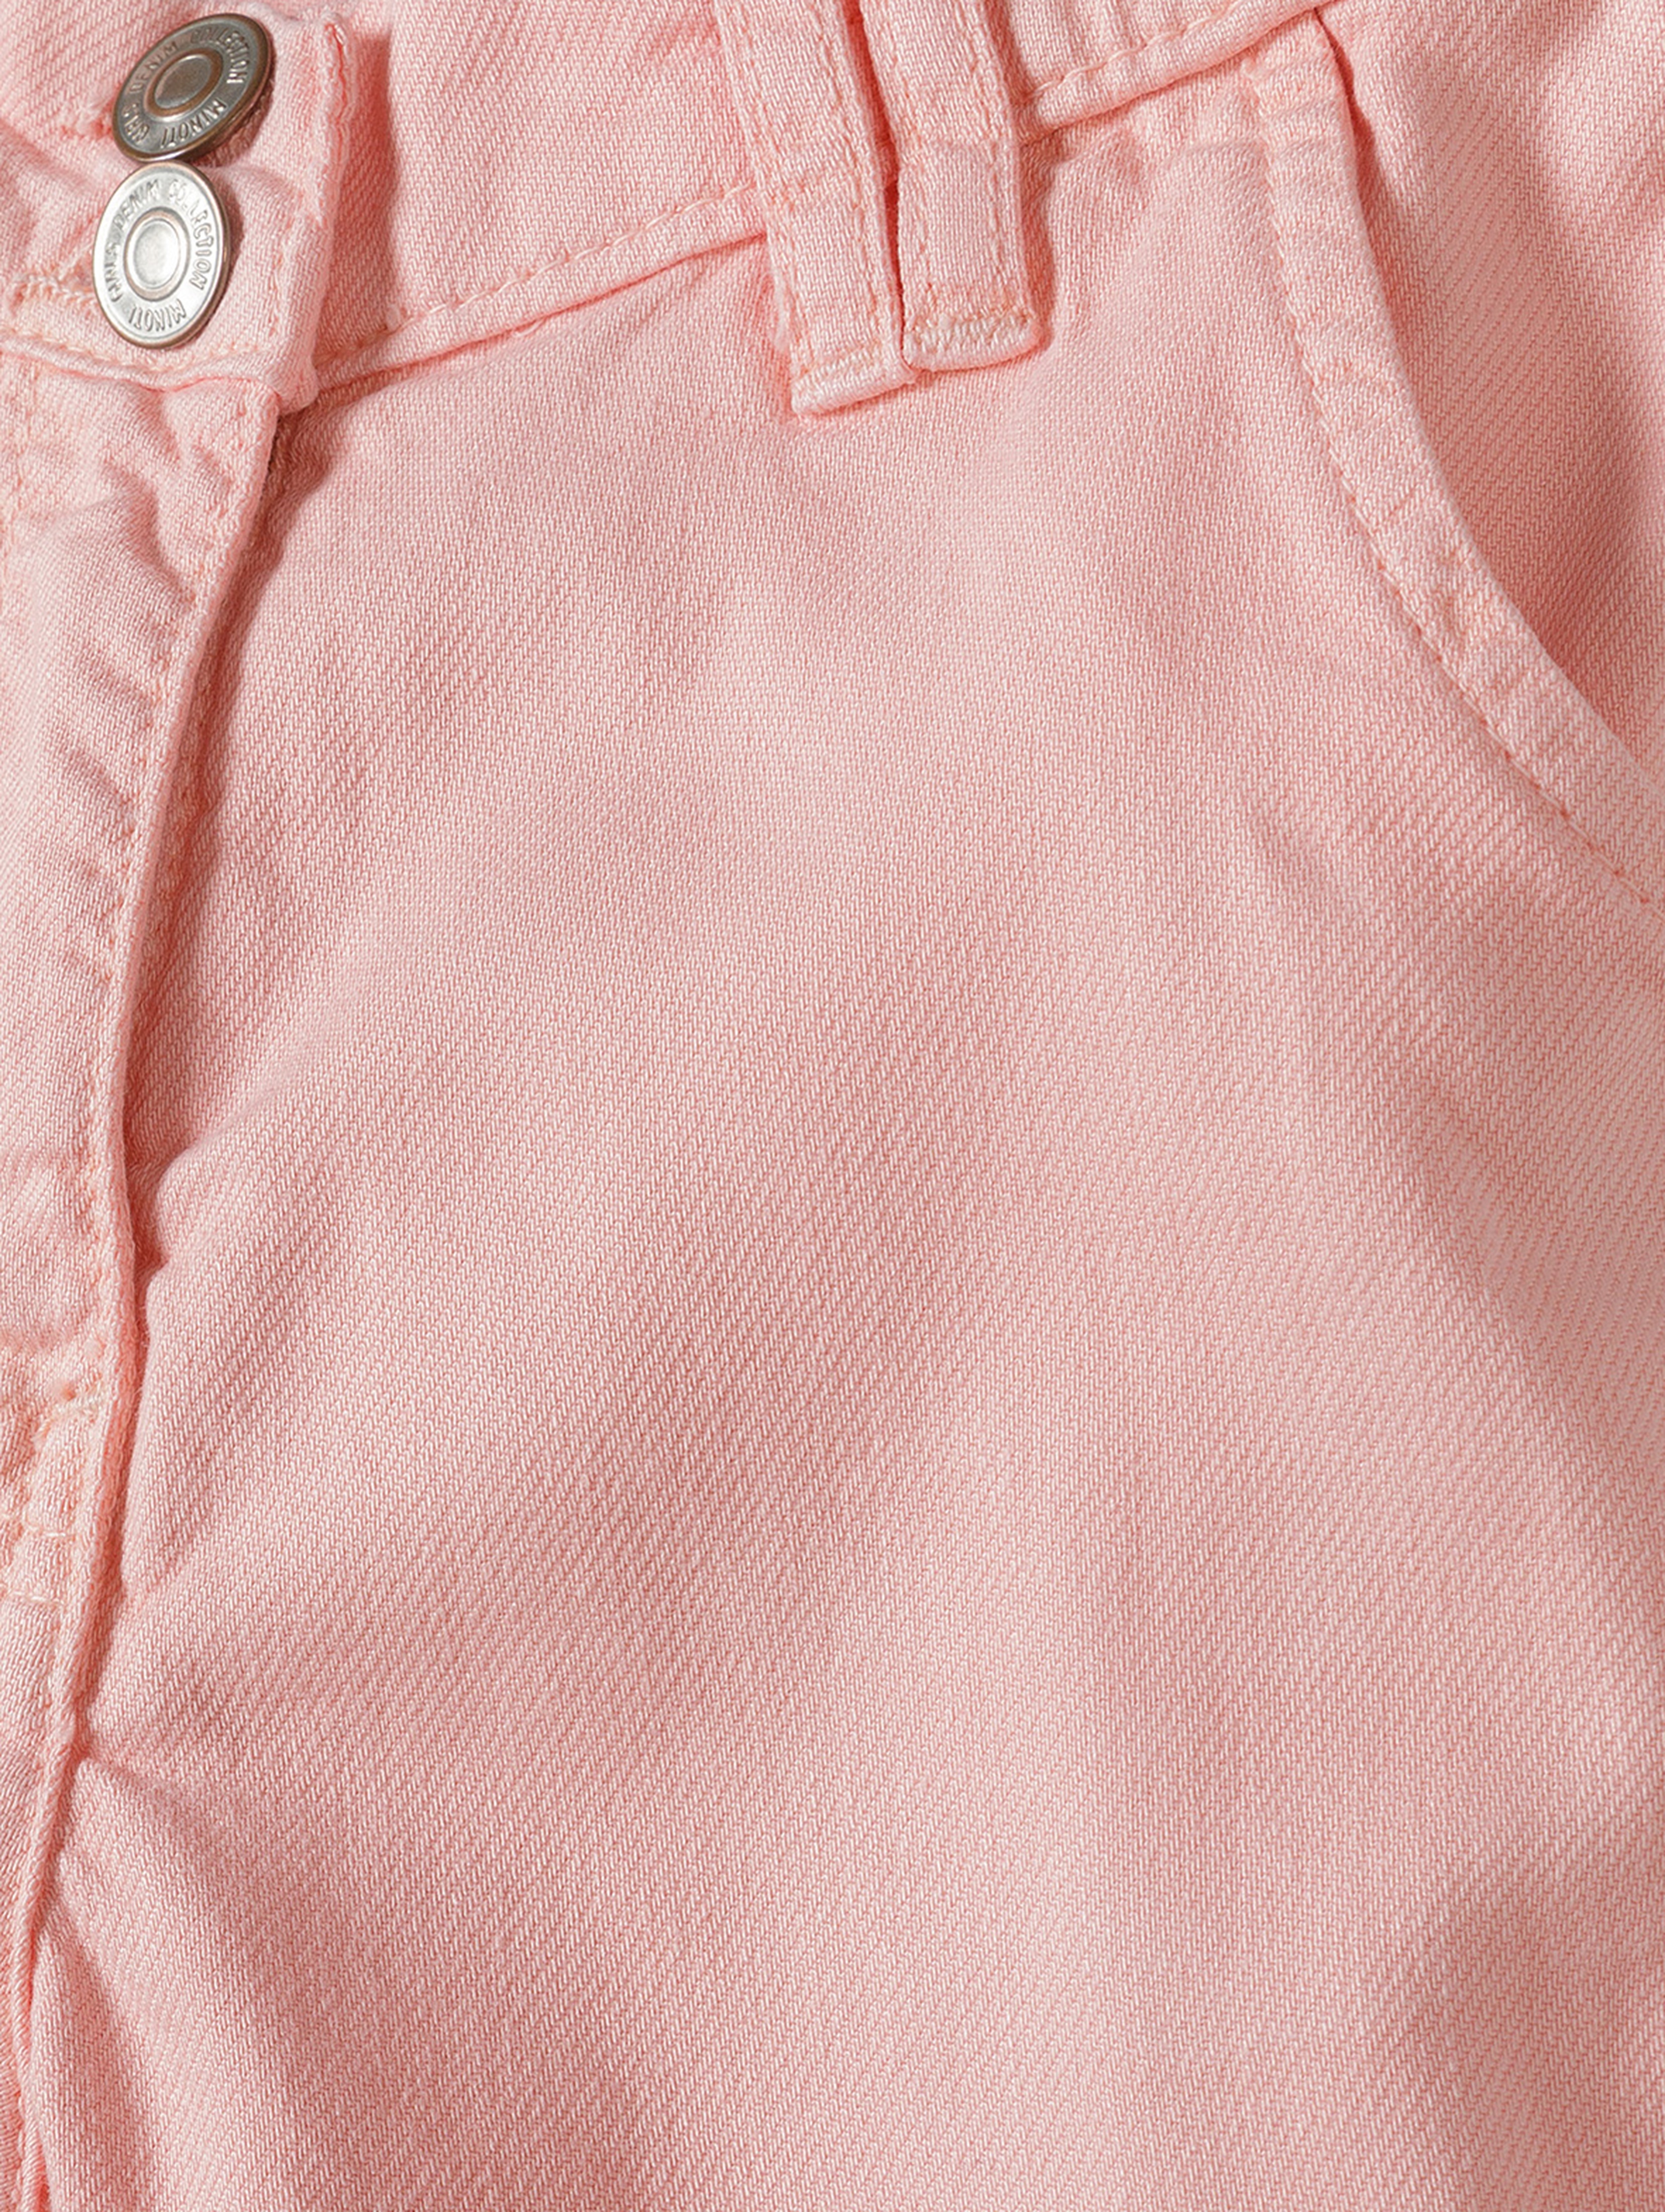 Spodnie typu bojówki dla małej dziewczynki różowe